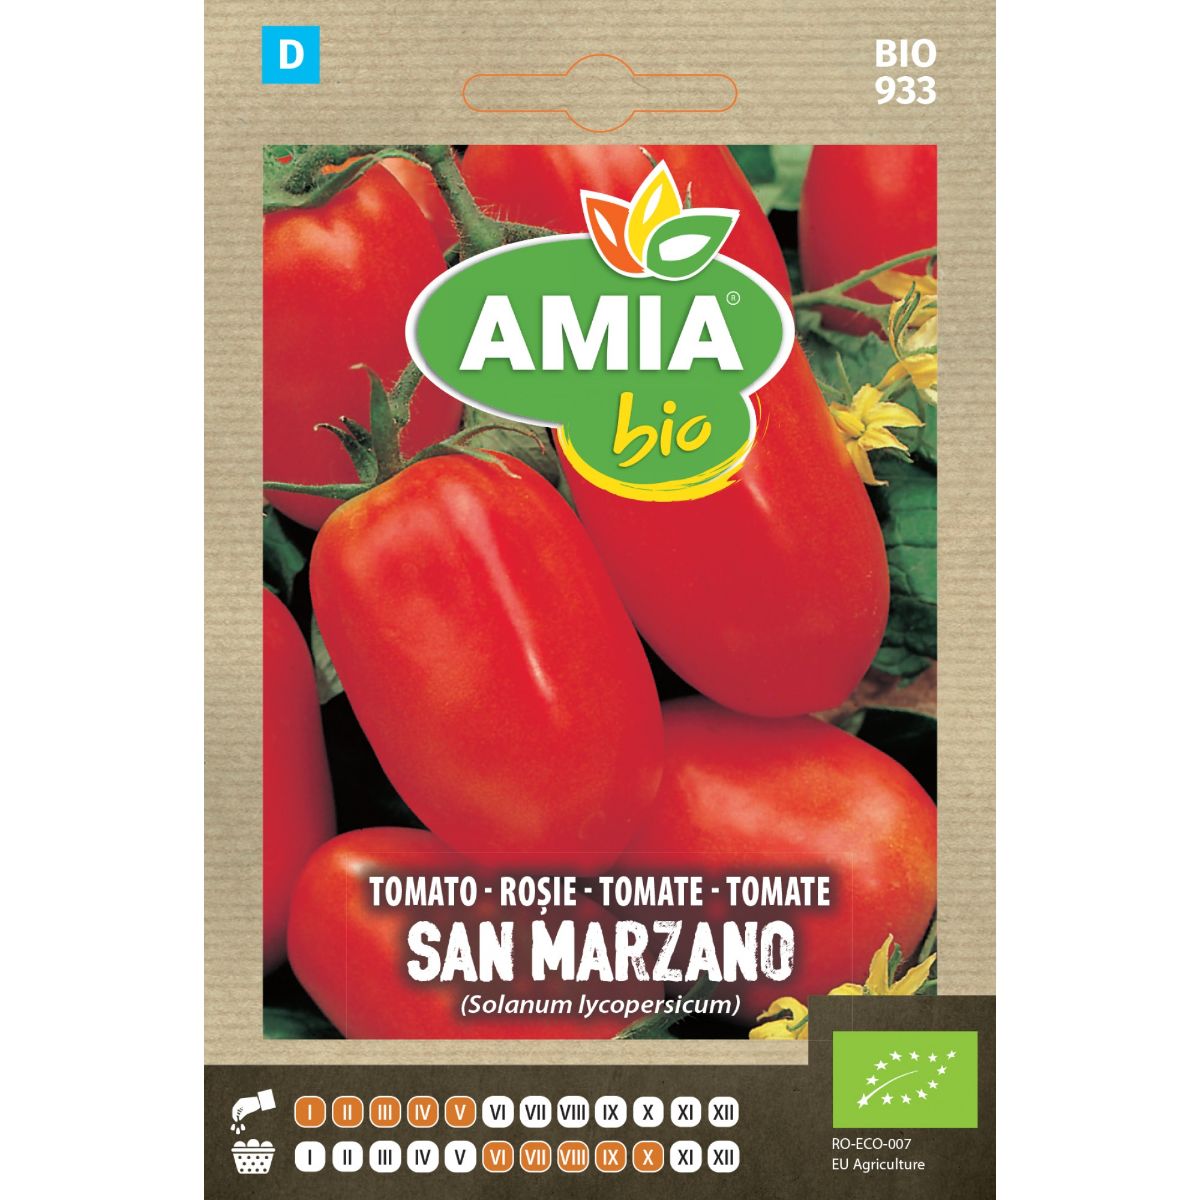 Tomate - Seminte Tomate San Marzano BIO AMIA 0.15gr, hectarul.ro